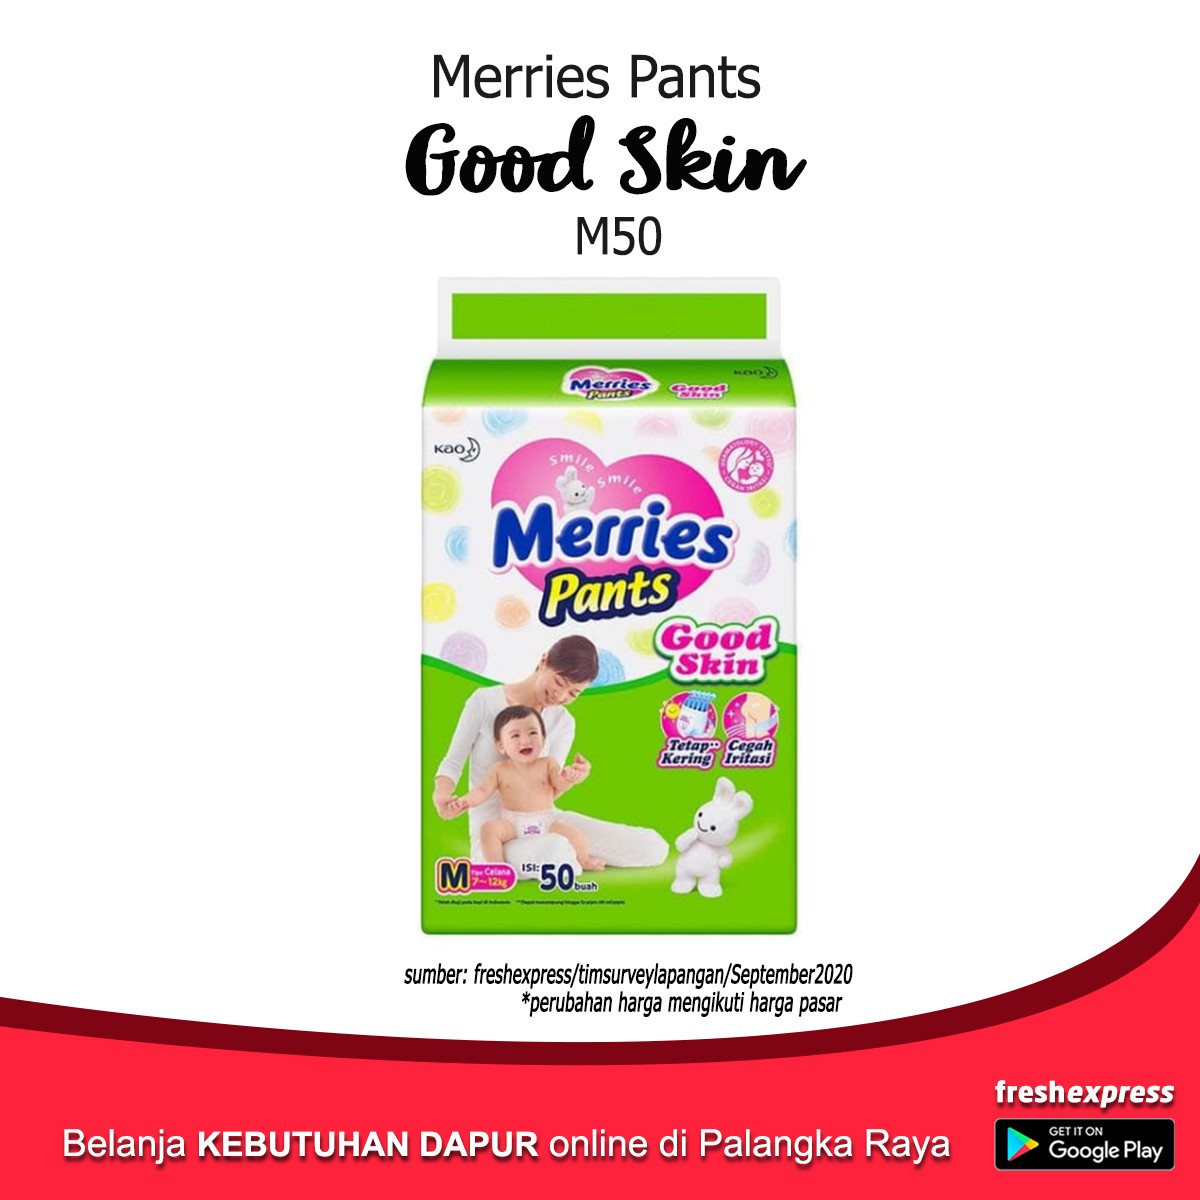 Merries Pants Good Skin M50